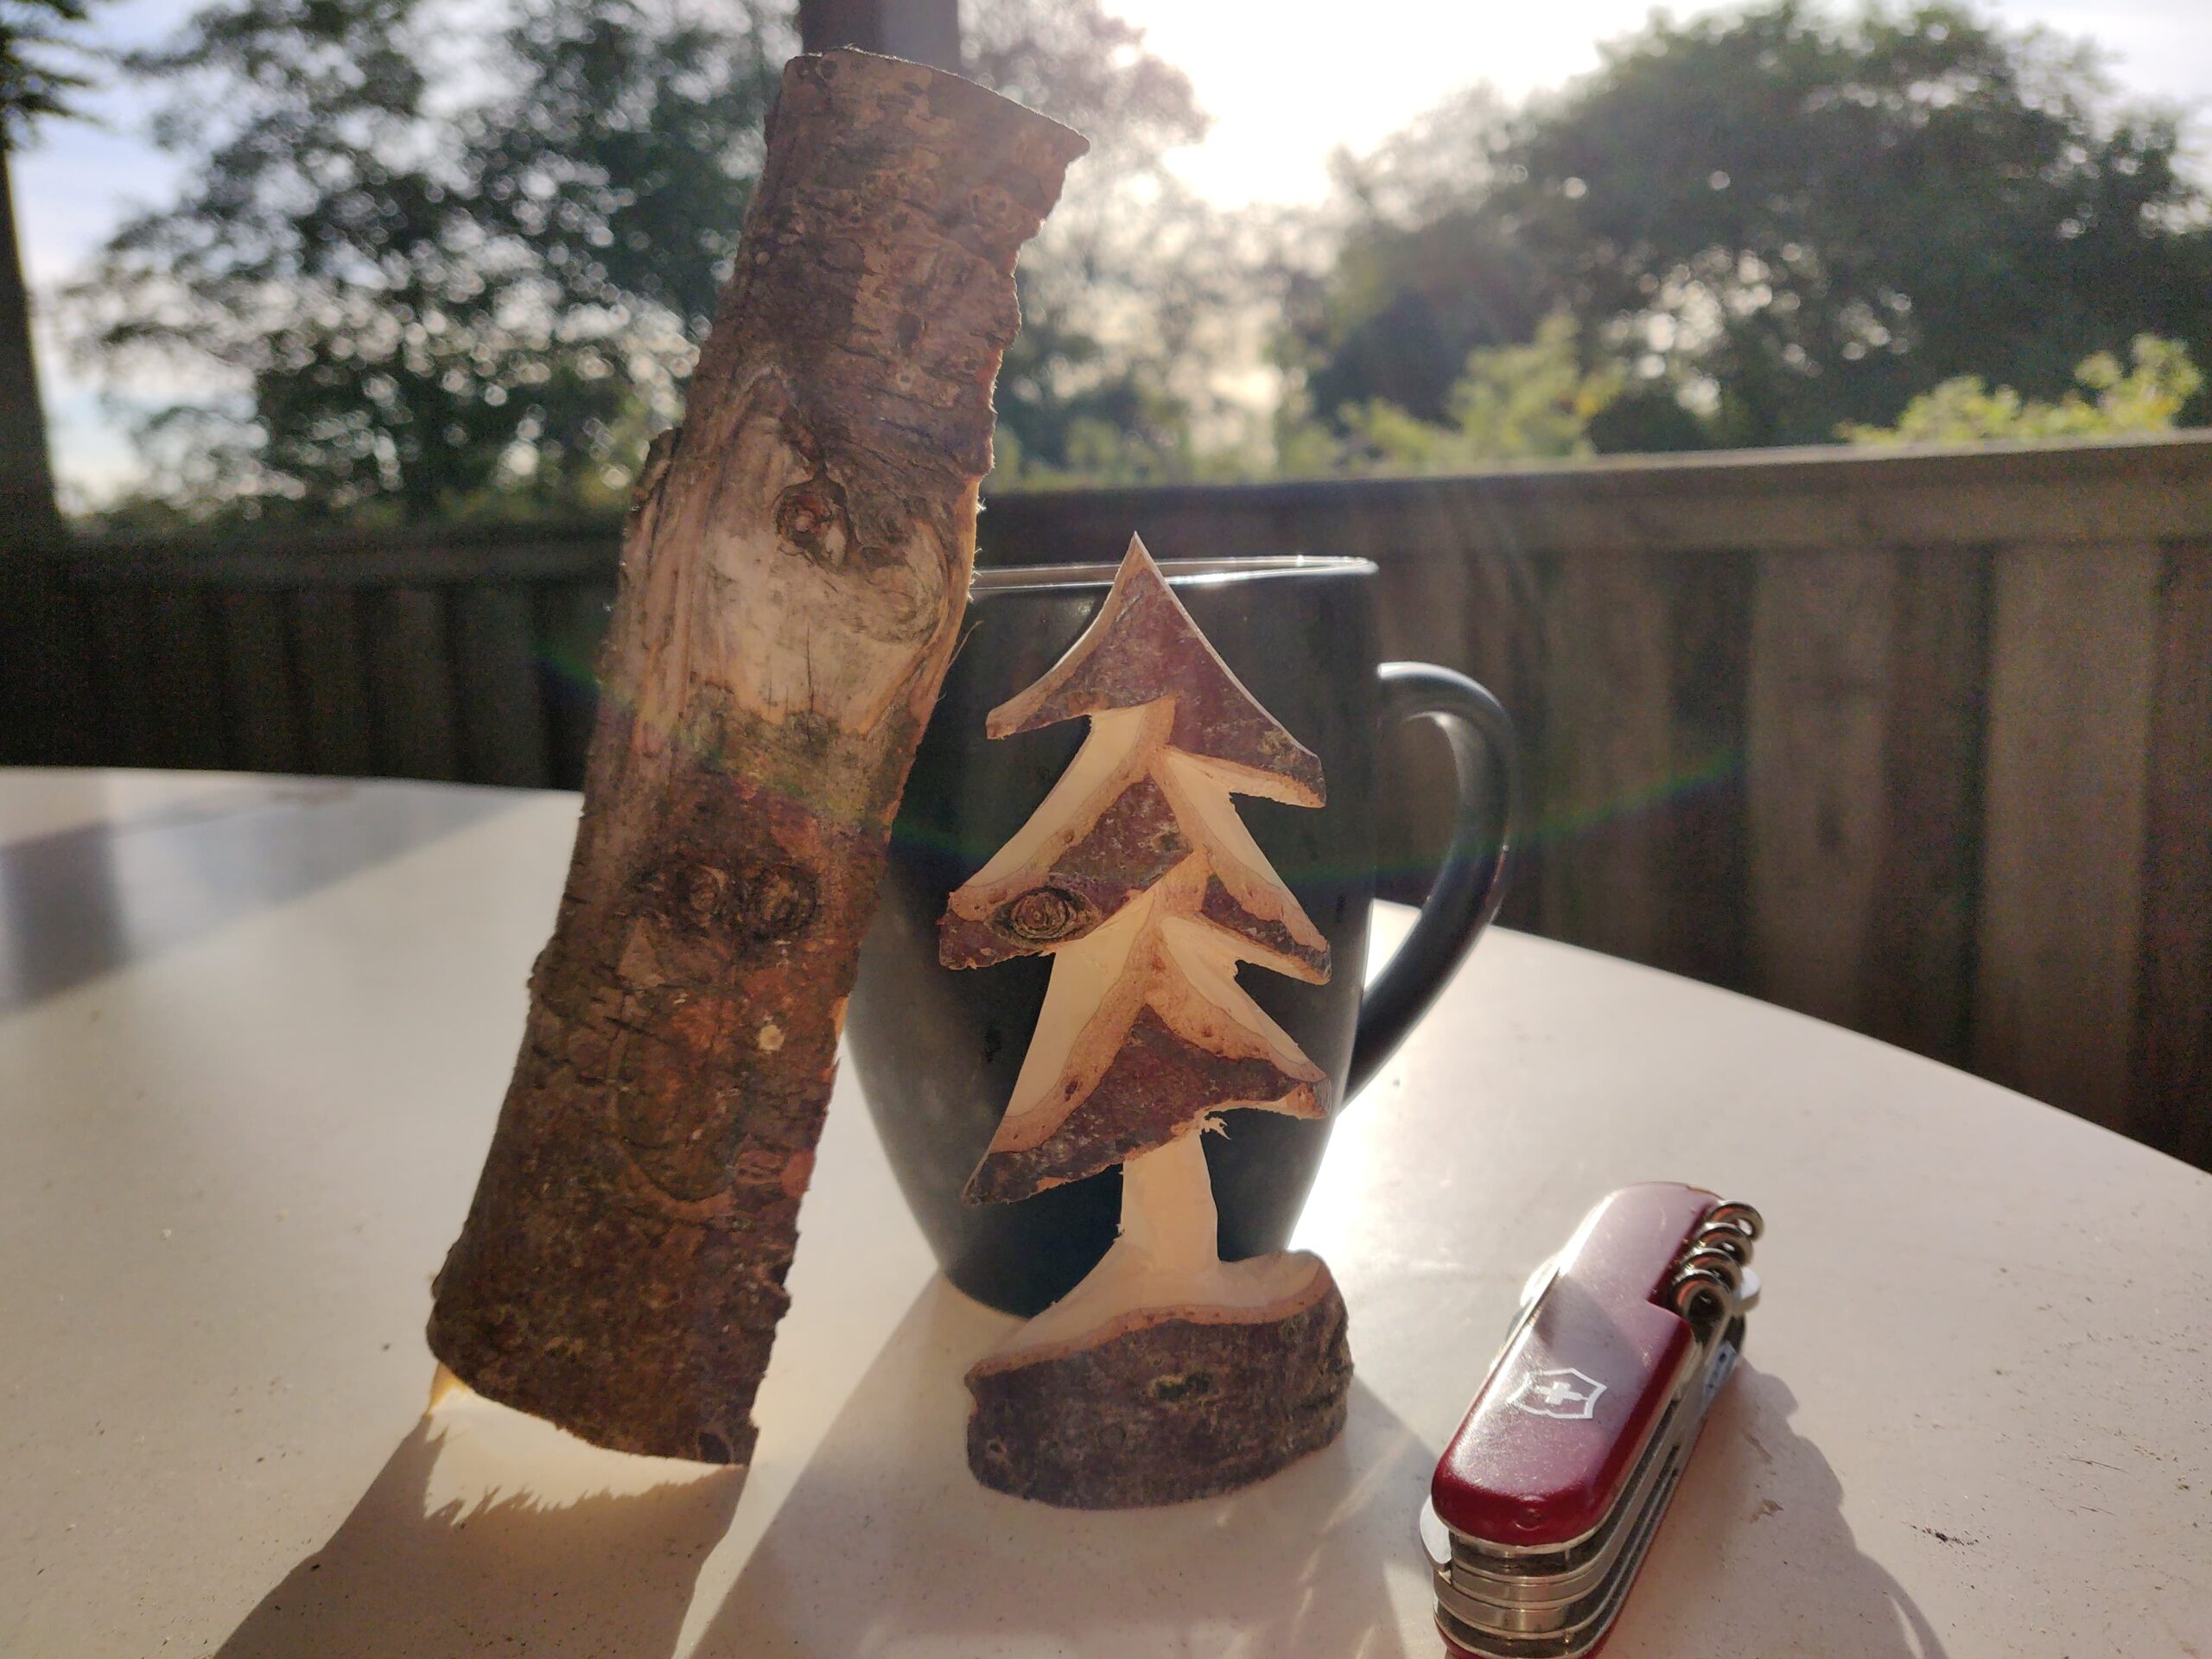 Snit a little bittle, som eks. en jule-ting med lommekniv, vi snitter en nisse, et træ eller andet der passer ind i den kommende juletid.